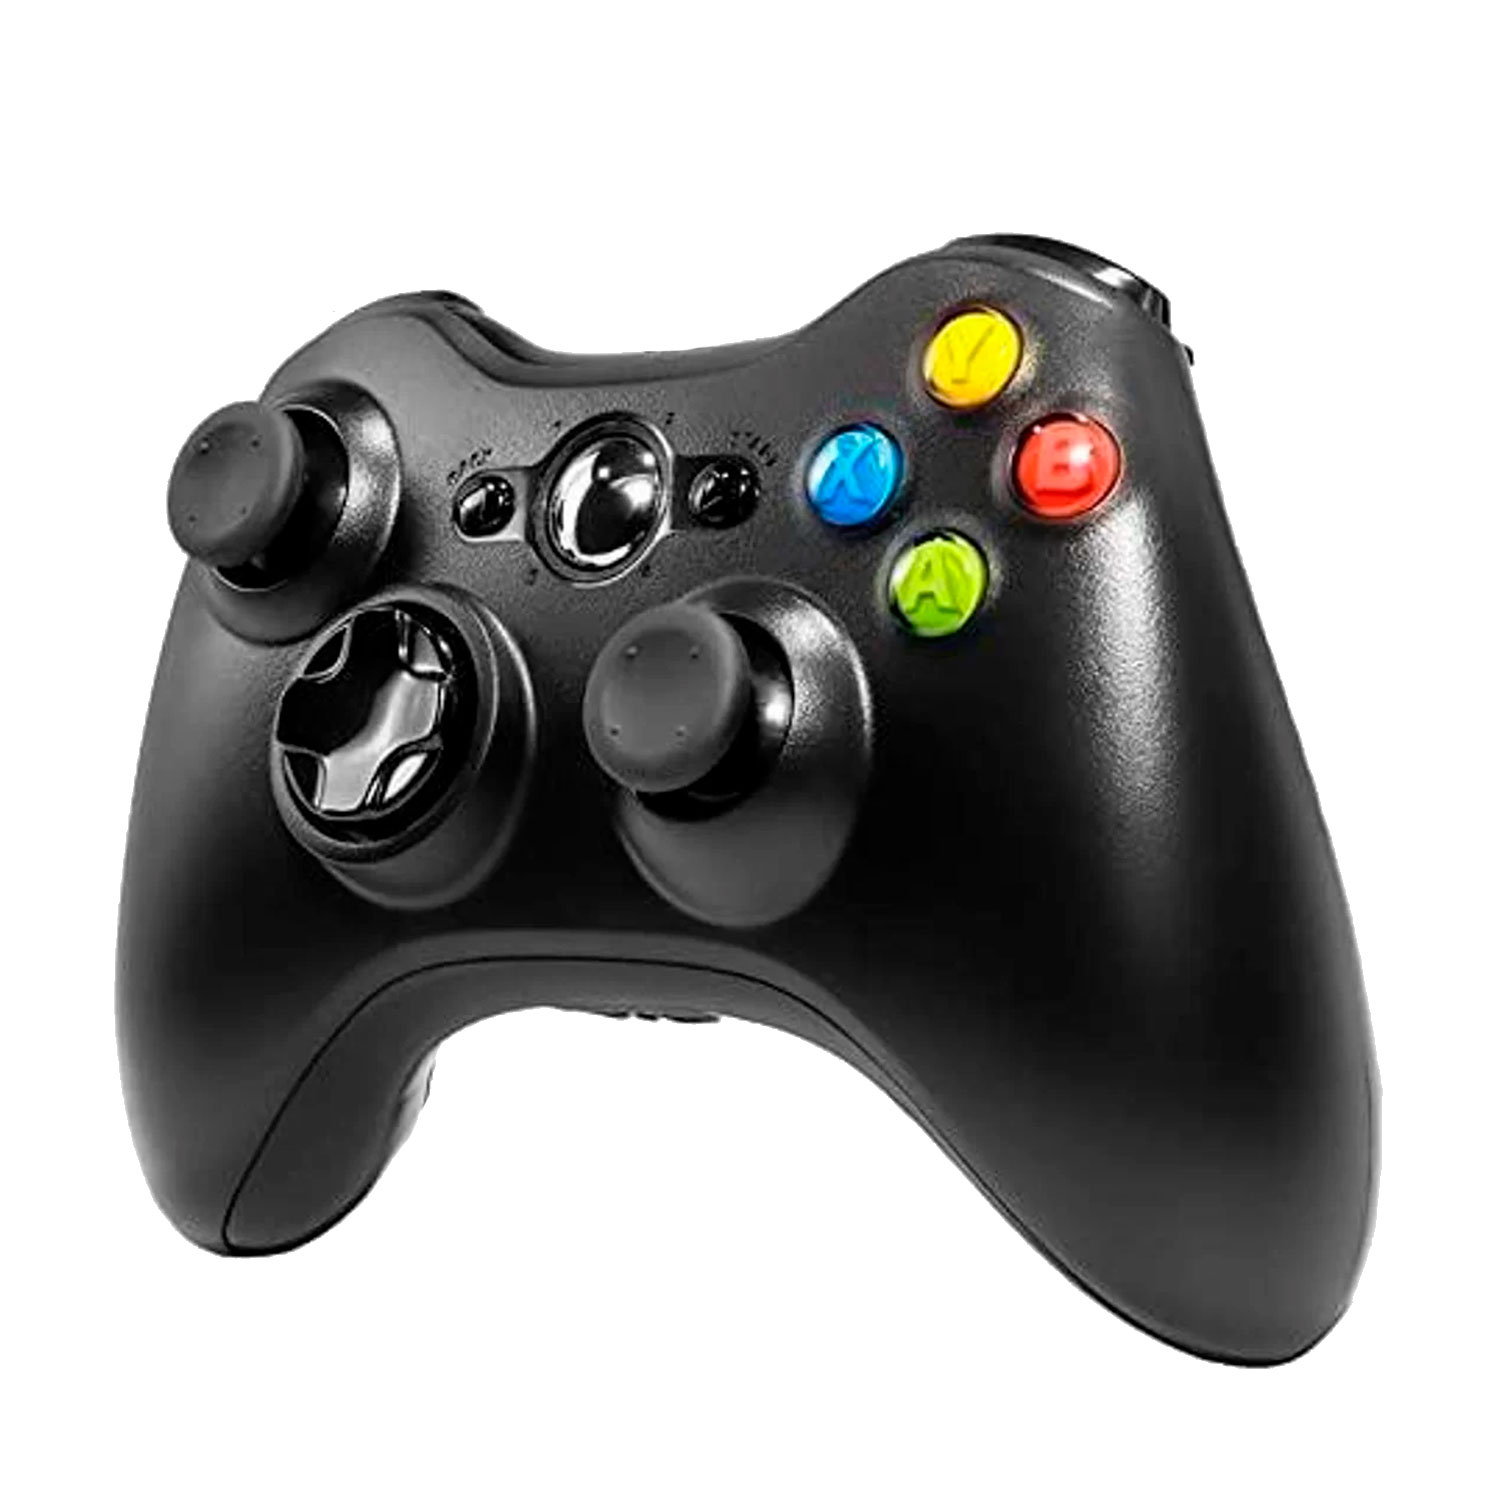 Controle Play Game Xbox 360 Sem Fio com Adaptador para PC - Preto